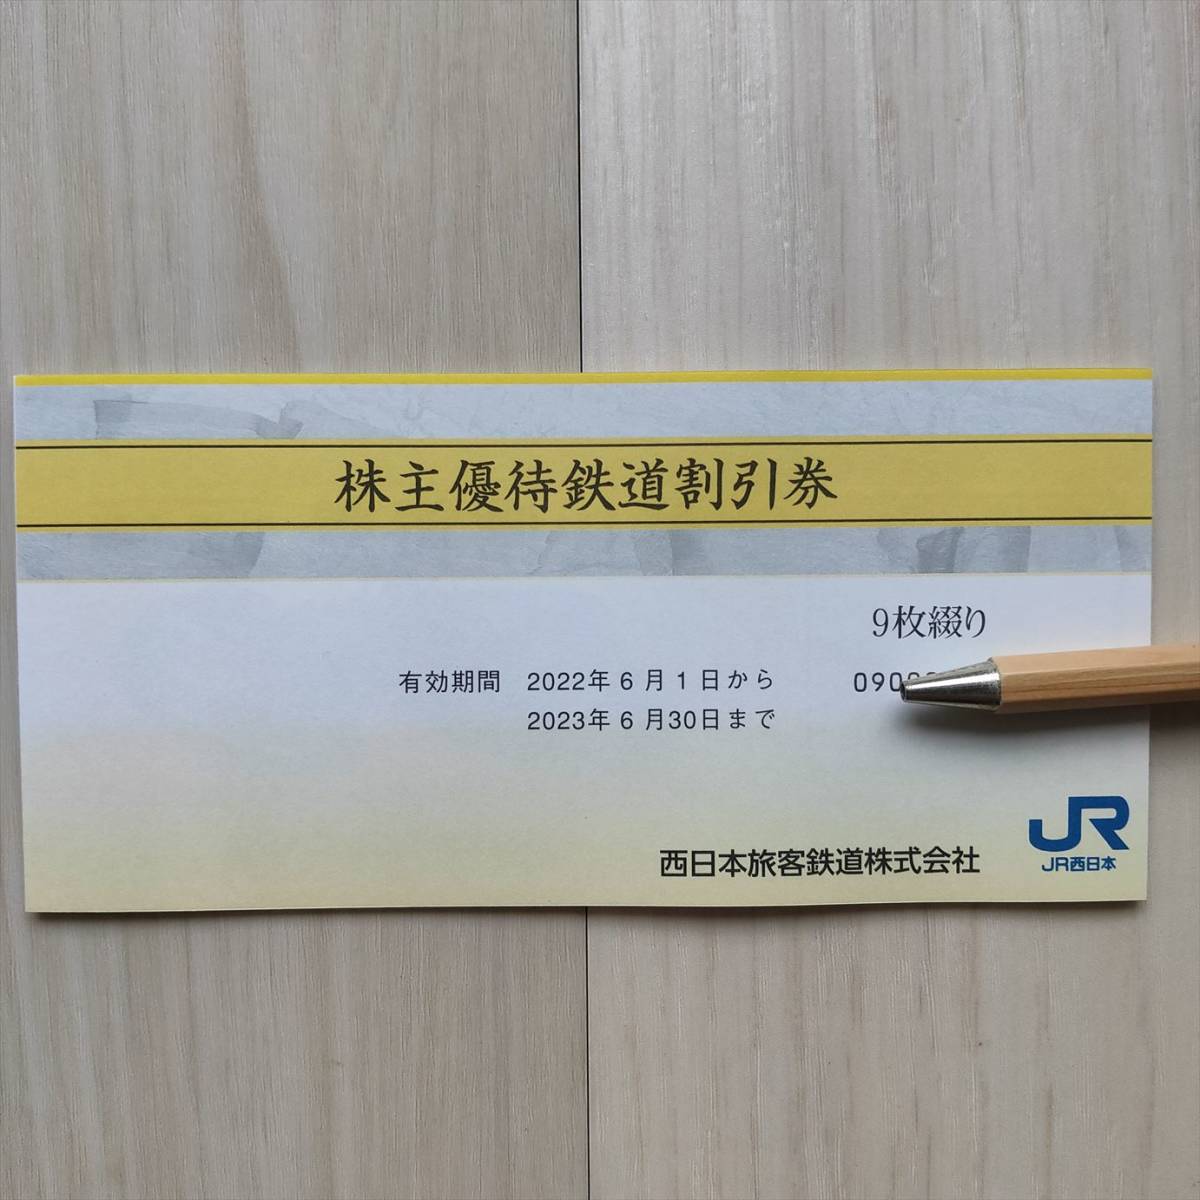 [9枚]JR西日本 株主優待 鉄道割引券_画像1